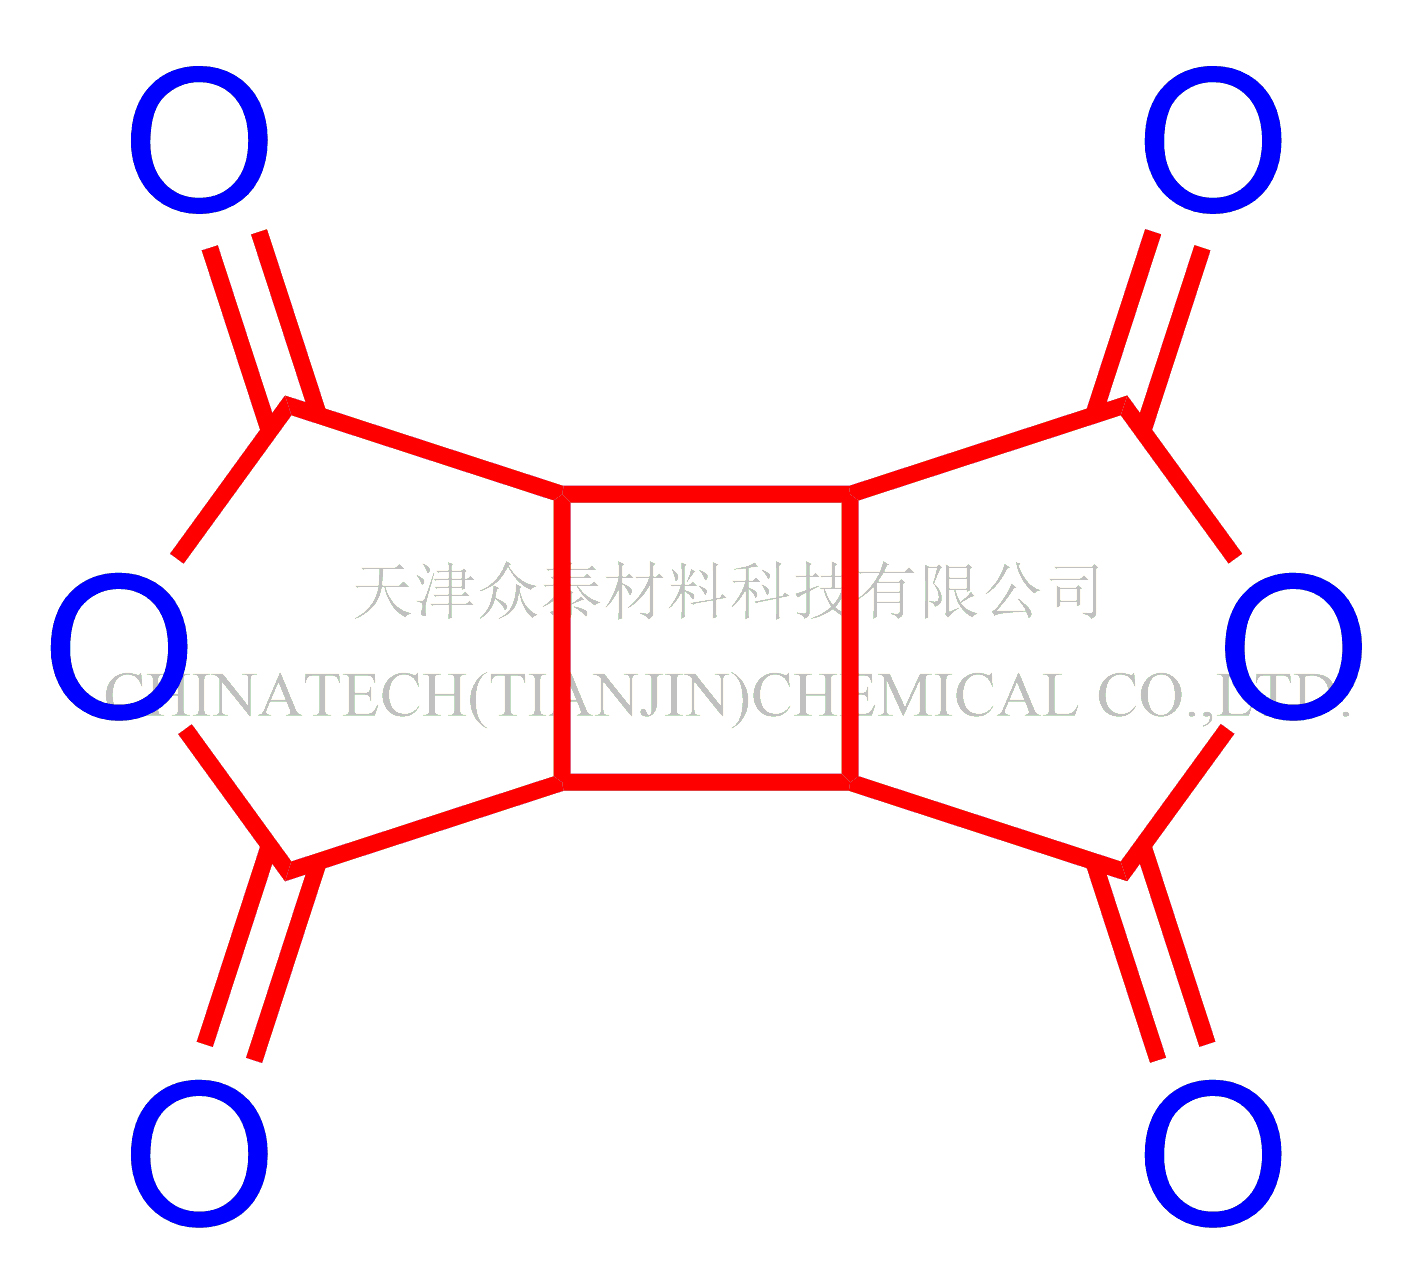 氢化均苯四甲酸二酐(CBDA) 产品图片